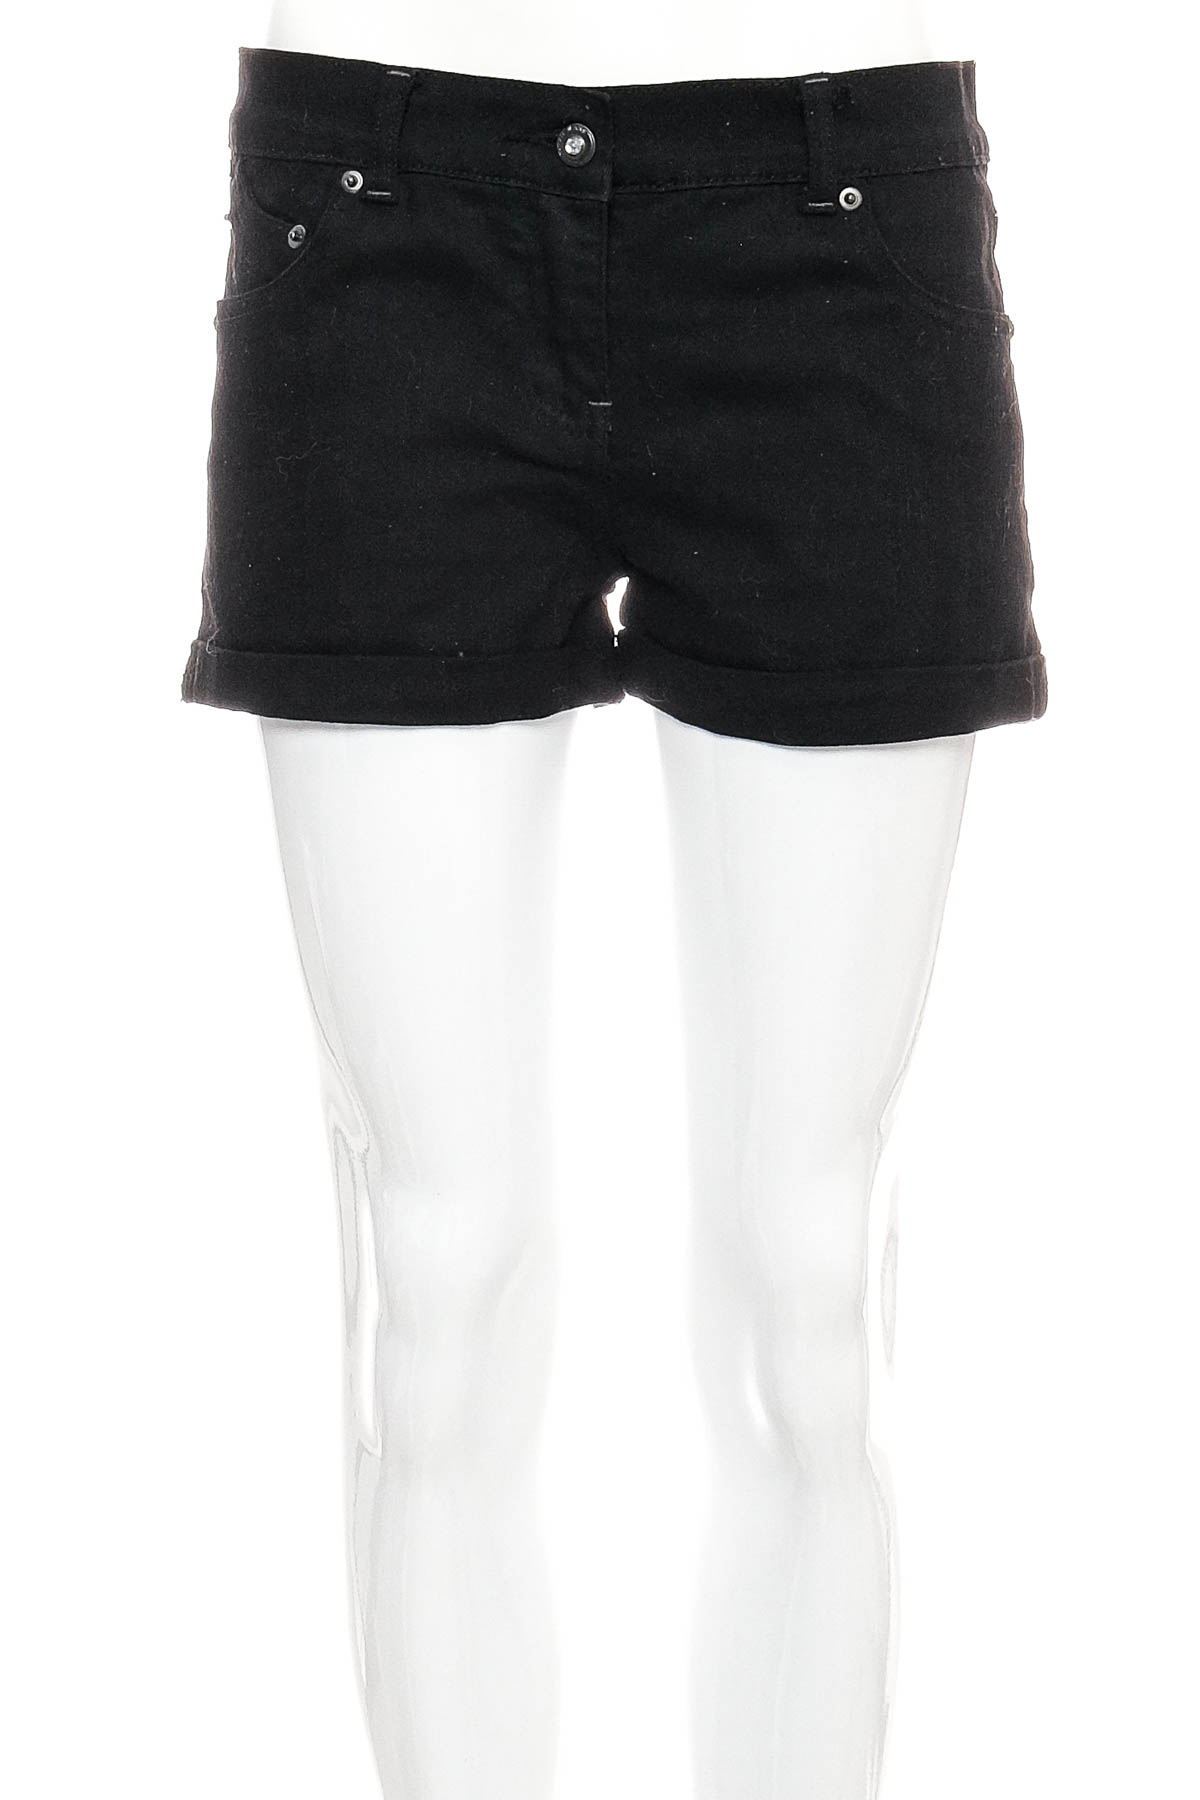 Female shorts - X-Mail - 0